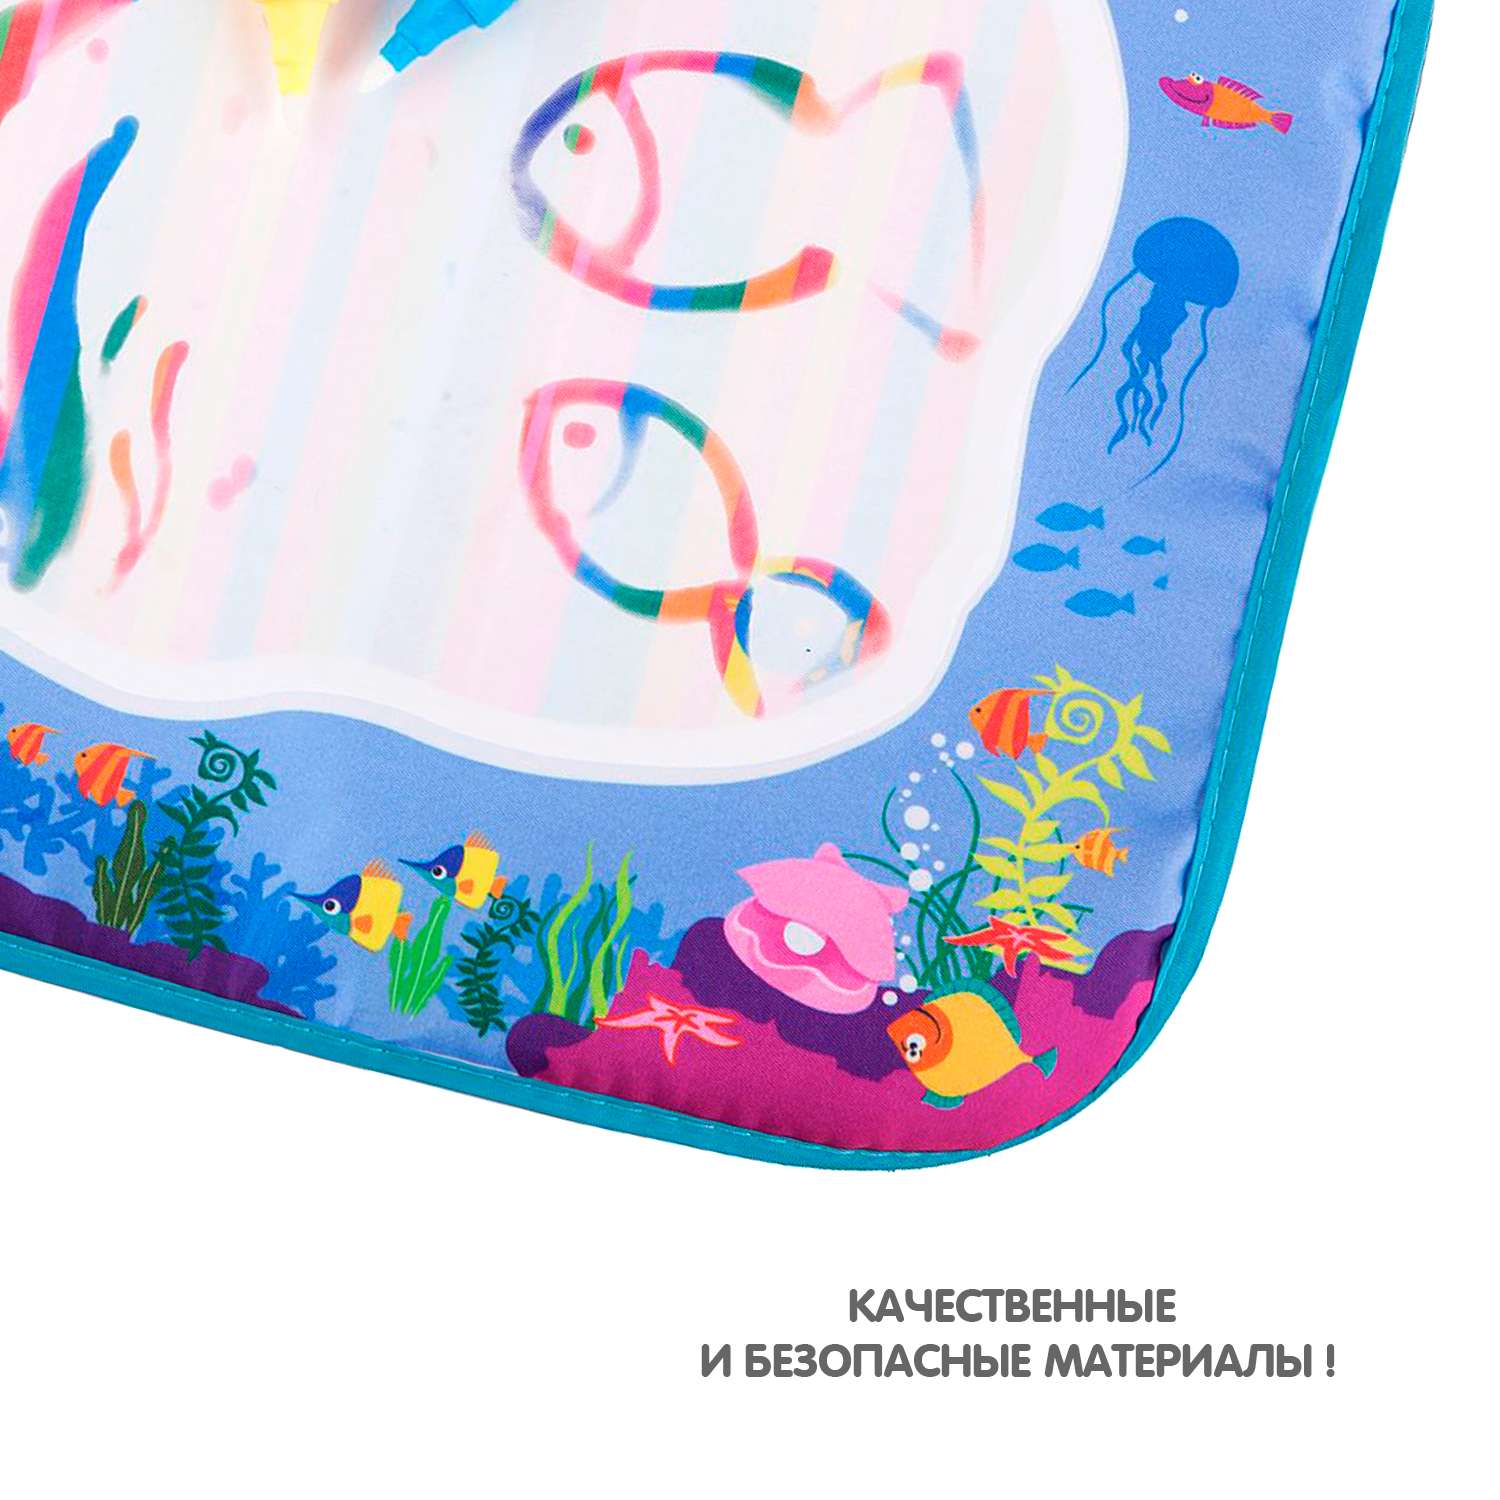 Водная раскраска BONDIBON Коврик для рисования Море серия Baby you - фото 9